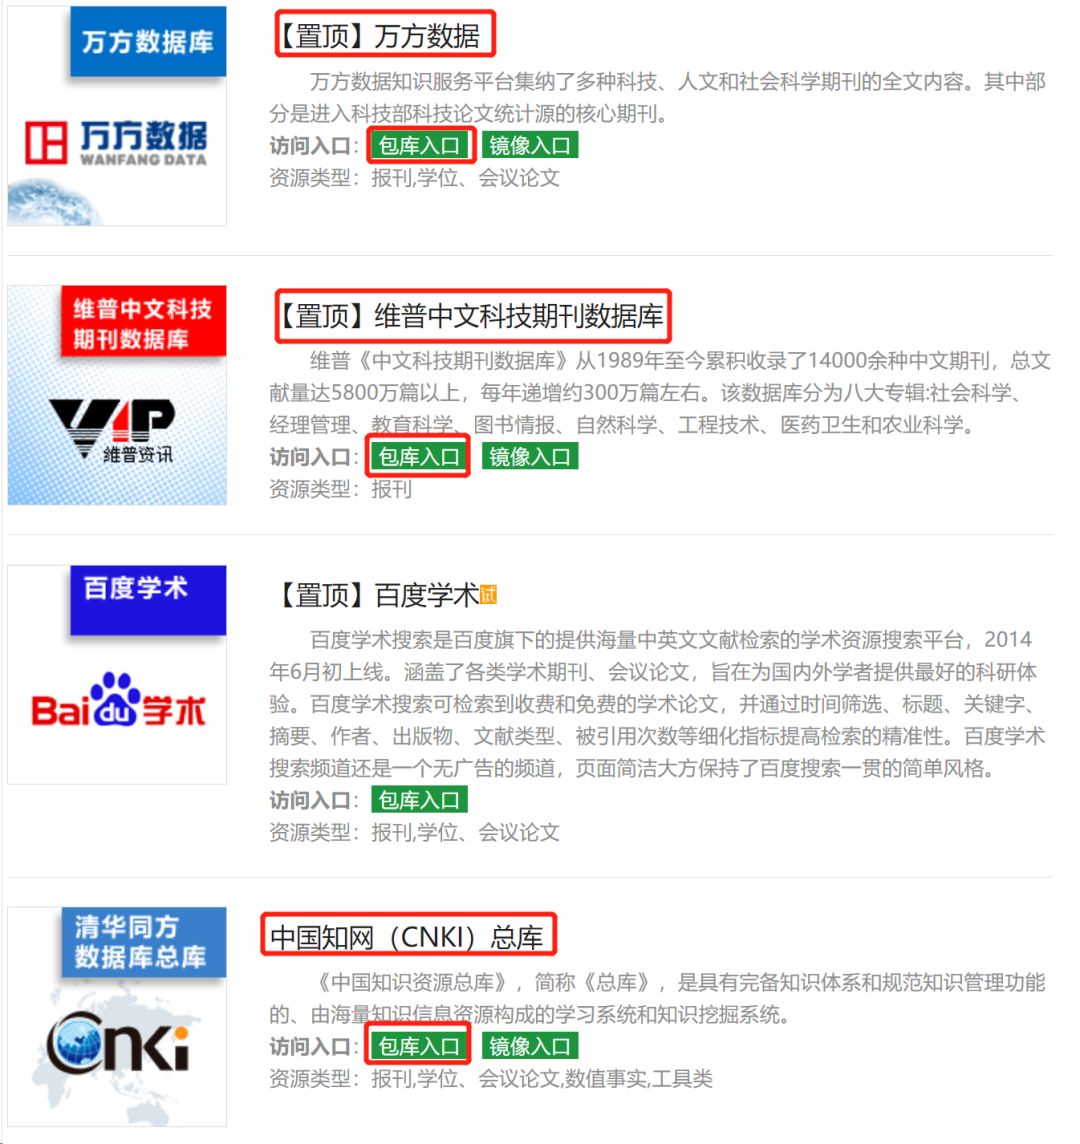 个网站,万方、维普、CNKI等众多数据库文献统